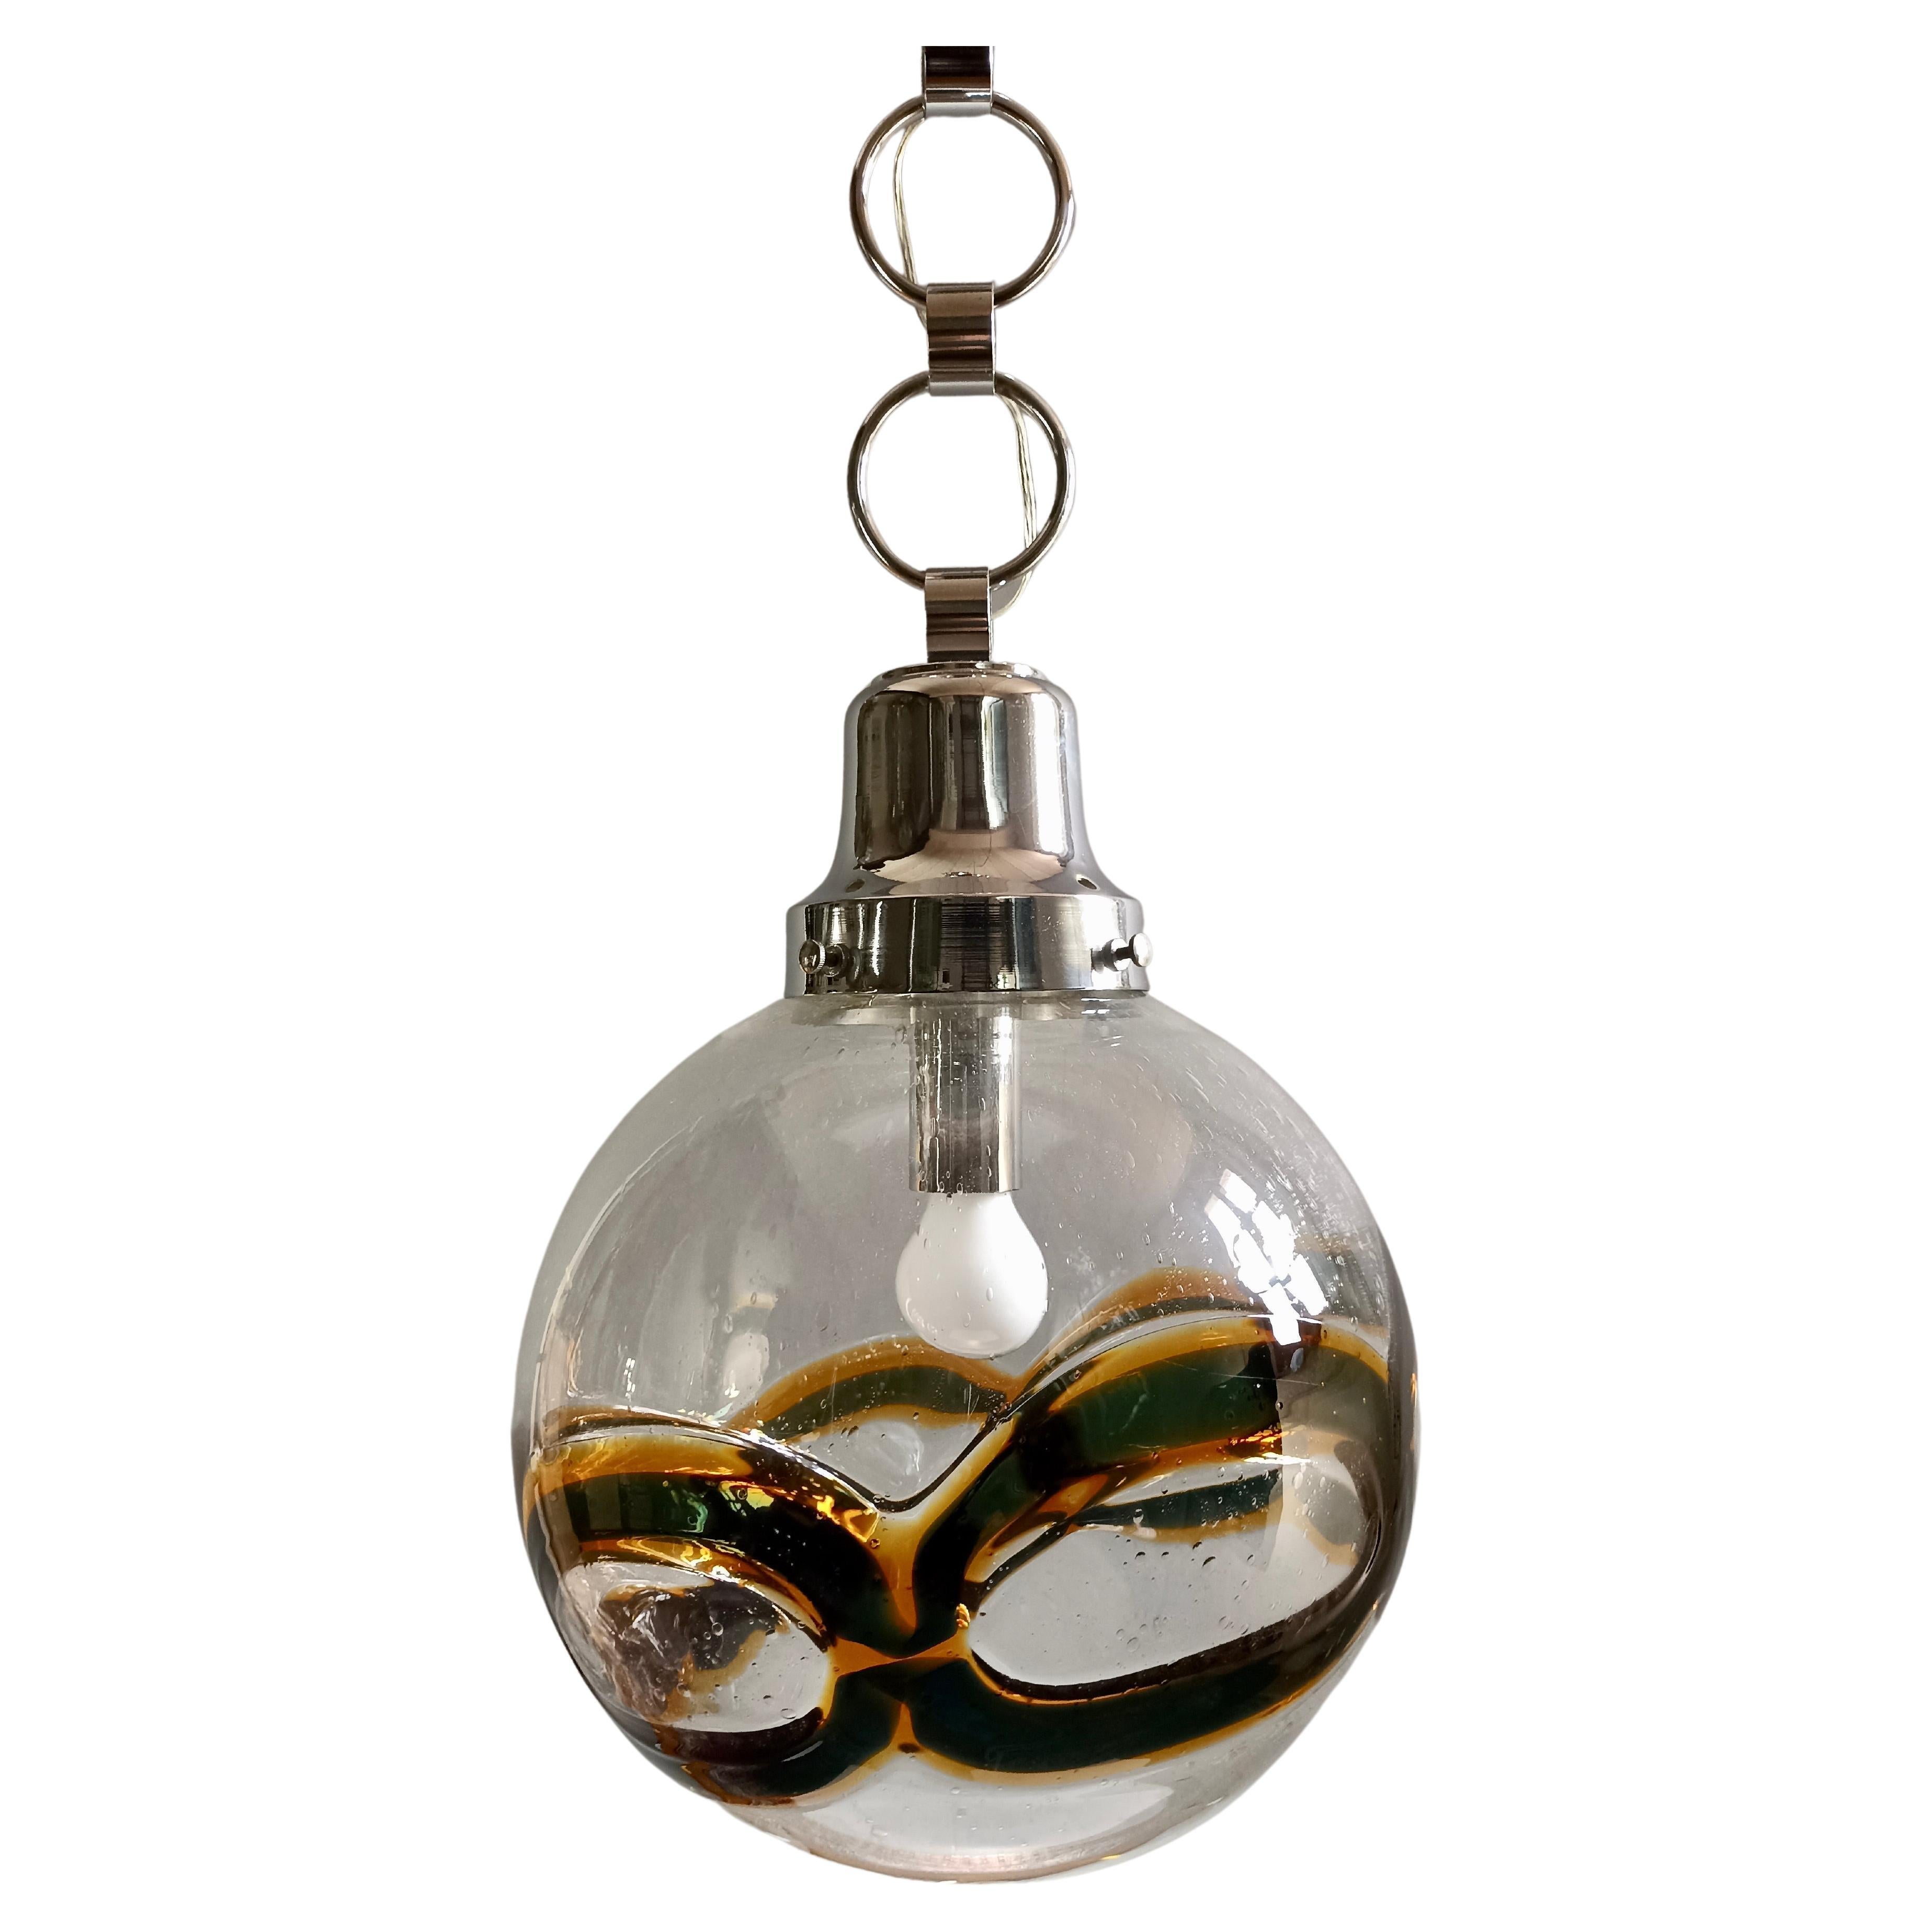 Fascinante et rare grande lampe suspendue en verre de Murano attribuable à Toni Zuccheri, datant des années 1960/70.
L'abat-jour en verre soufflé à la bouche est transparent et présente un fin travail de Pulegoso ainsi qu'une bande irrégulière de